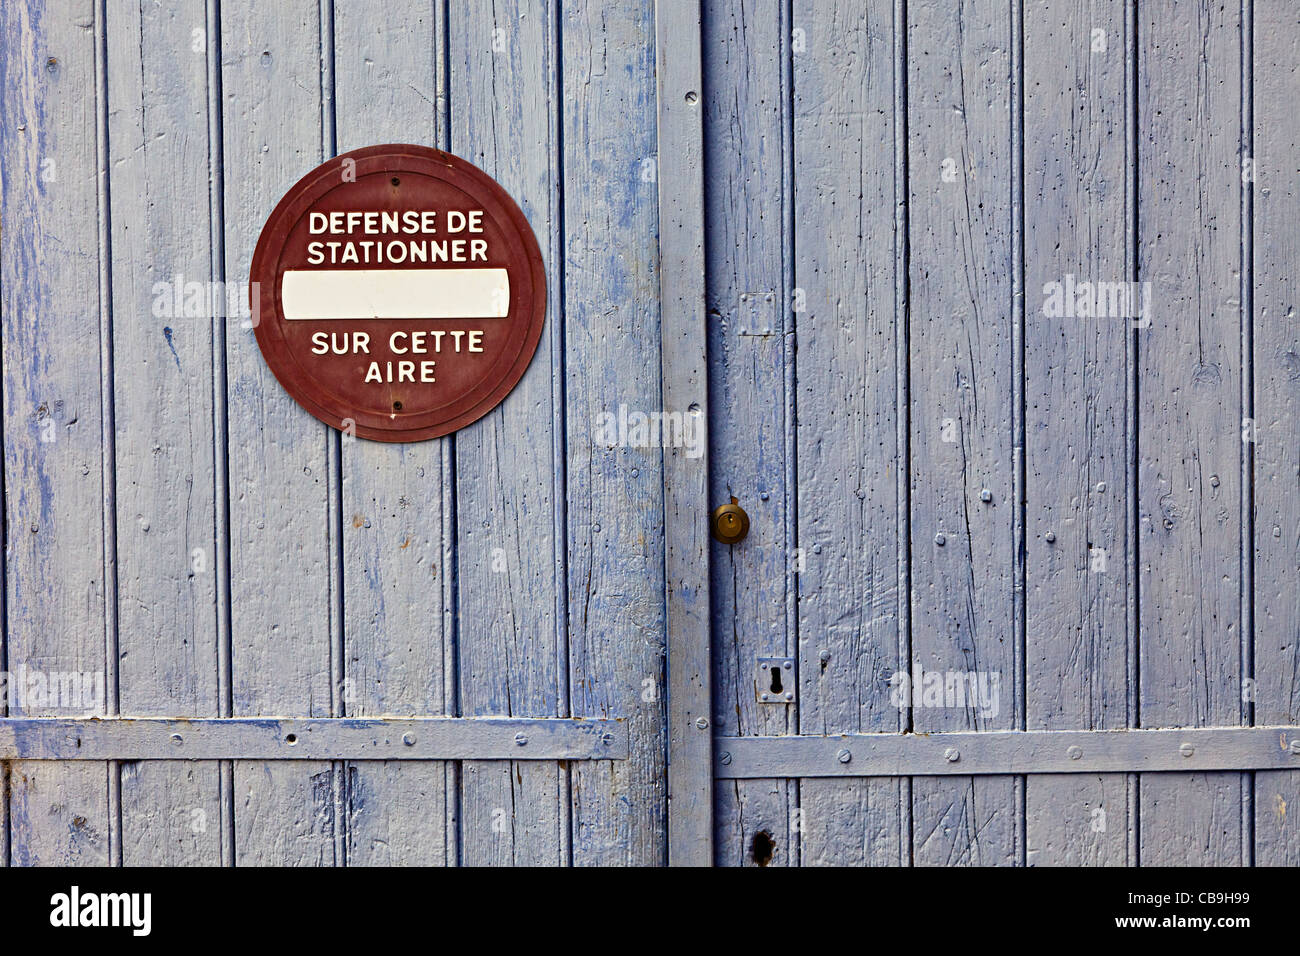 Keine Wartezeit Verteidigung de Stationner verblasst Schild am Garage Tür Camares Stadt Frankreich Stockfoto